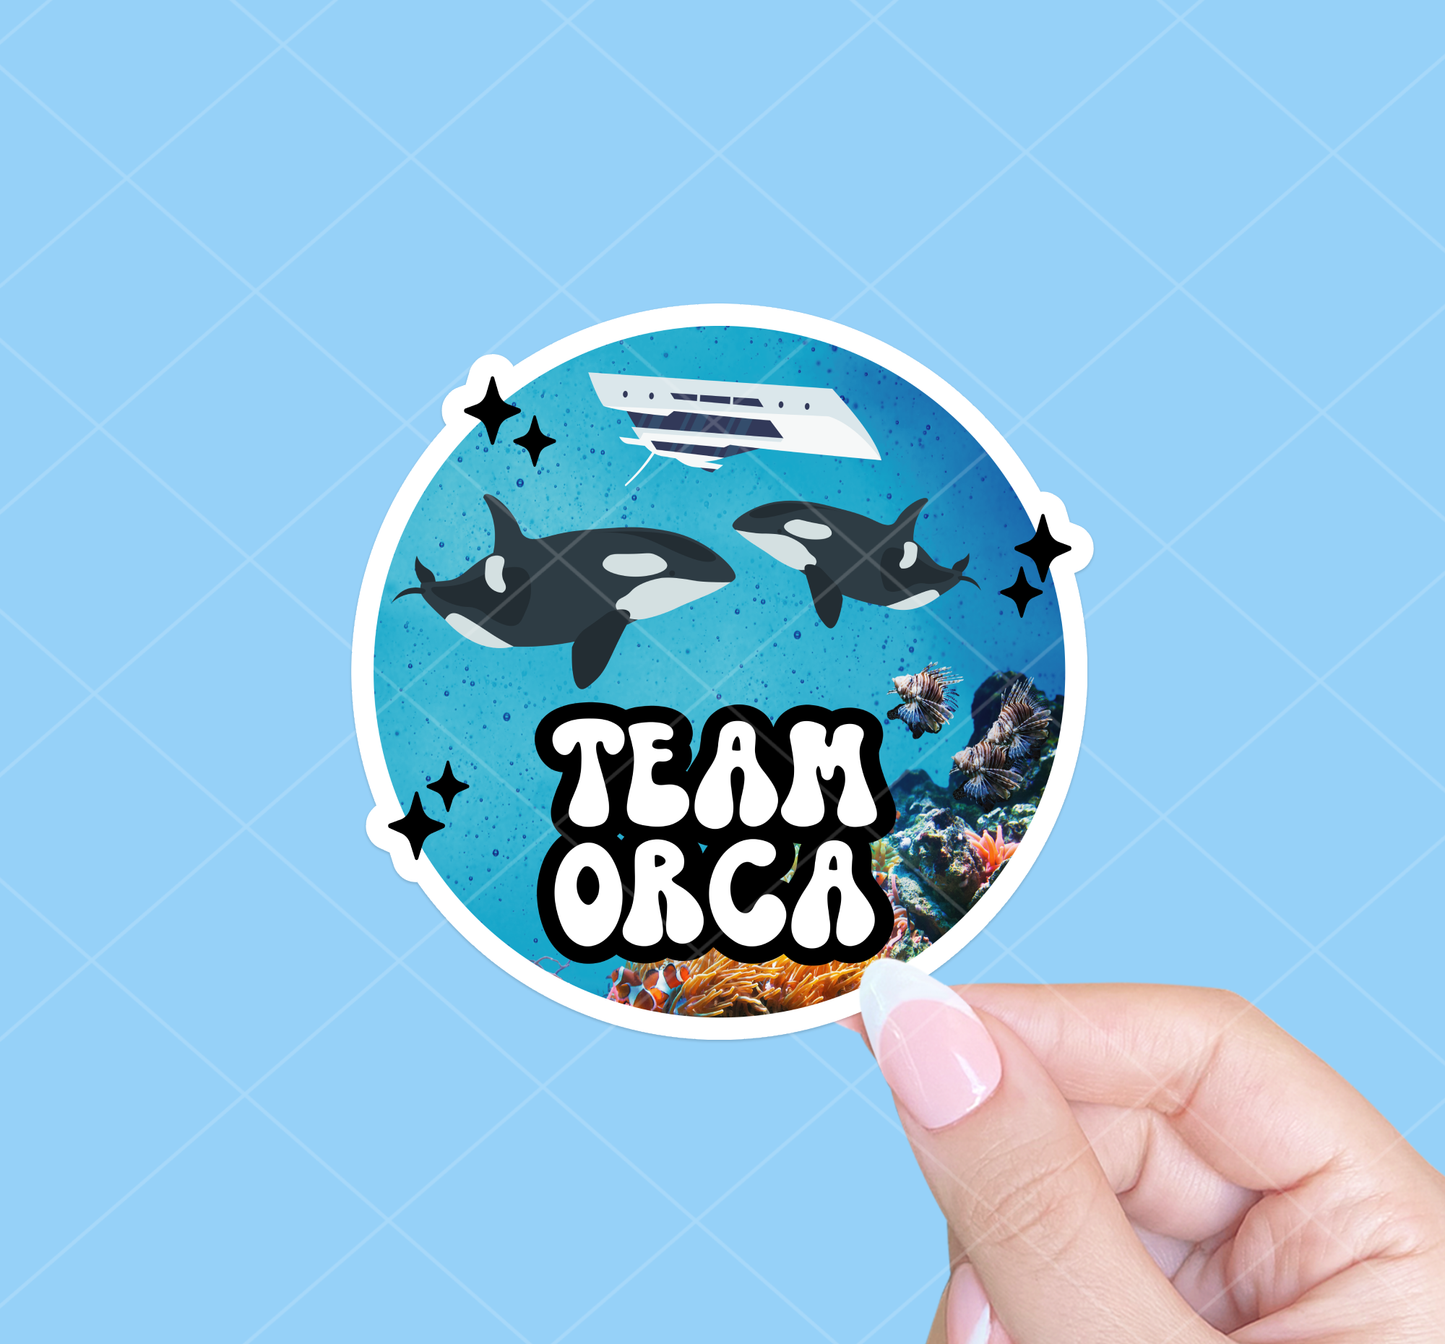 Team orca